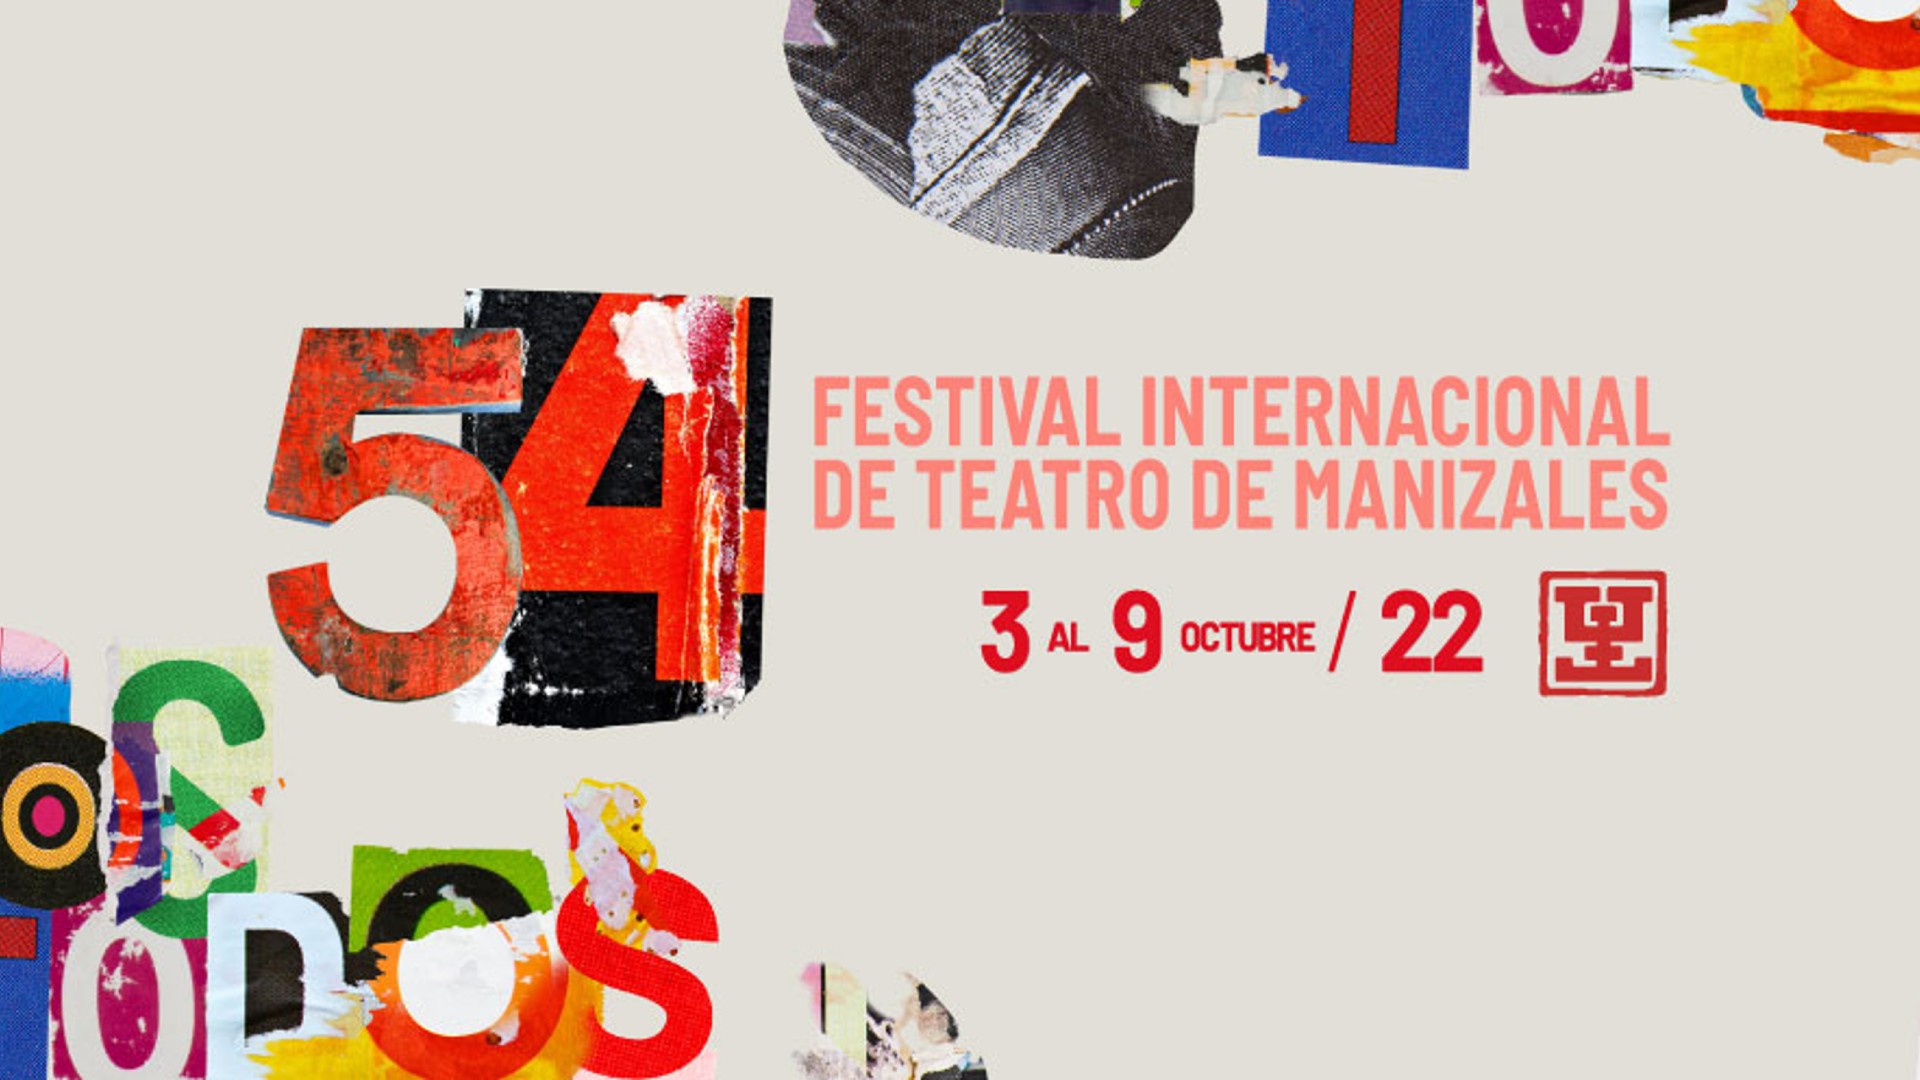 Chile es el país invitado de honor para la quincuagésima quinta edición del Festival Internacional de Teatro de Manizales